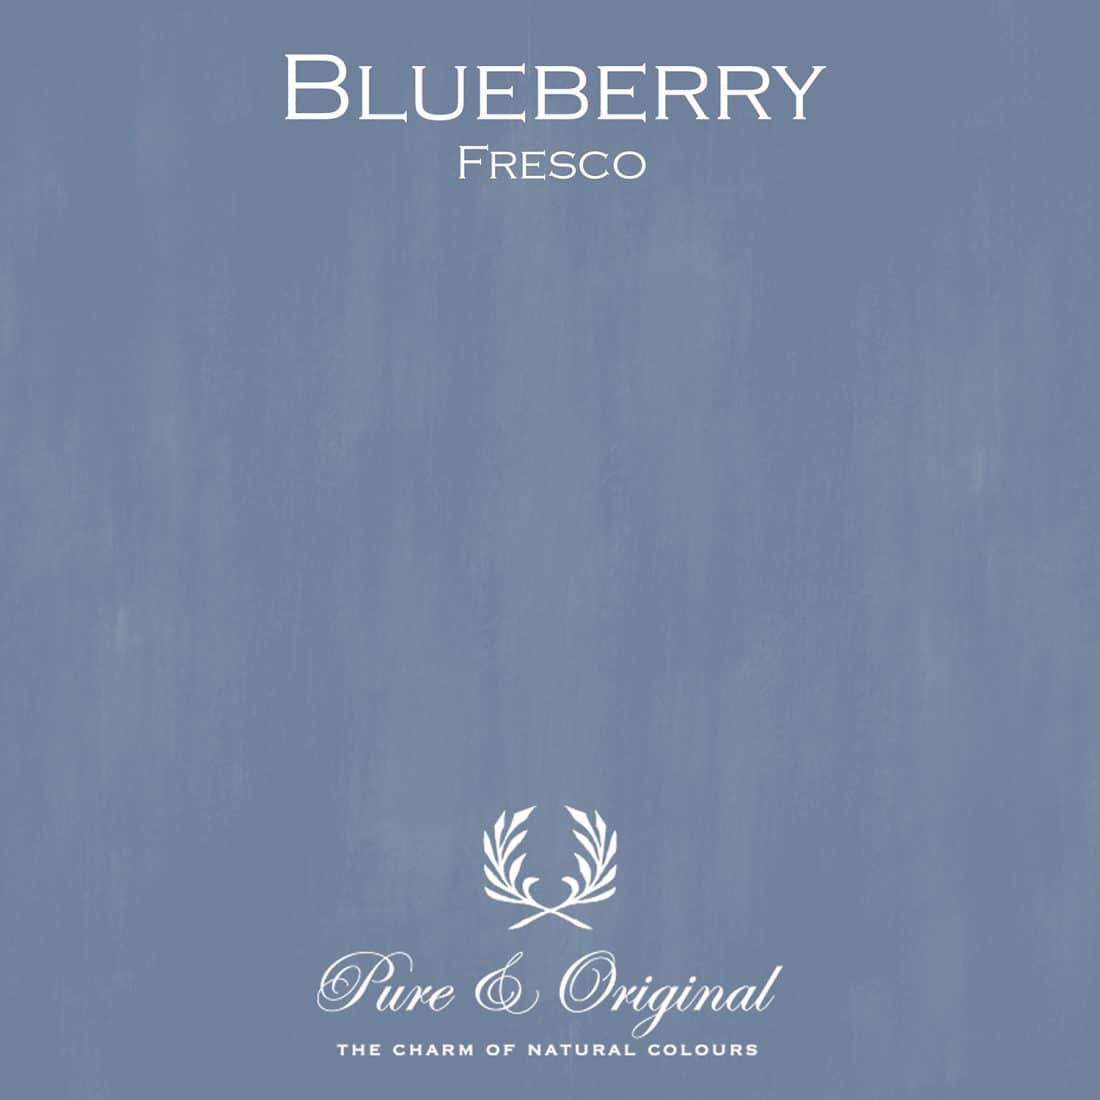 Blueberry Fresco